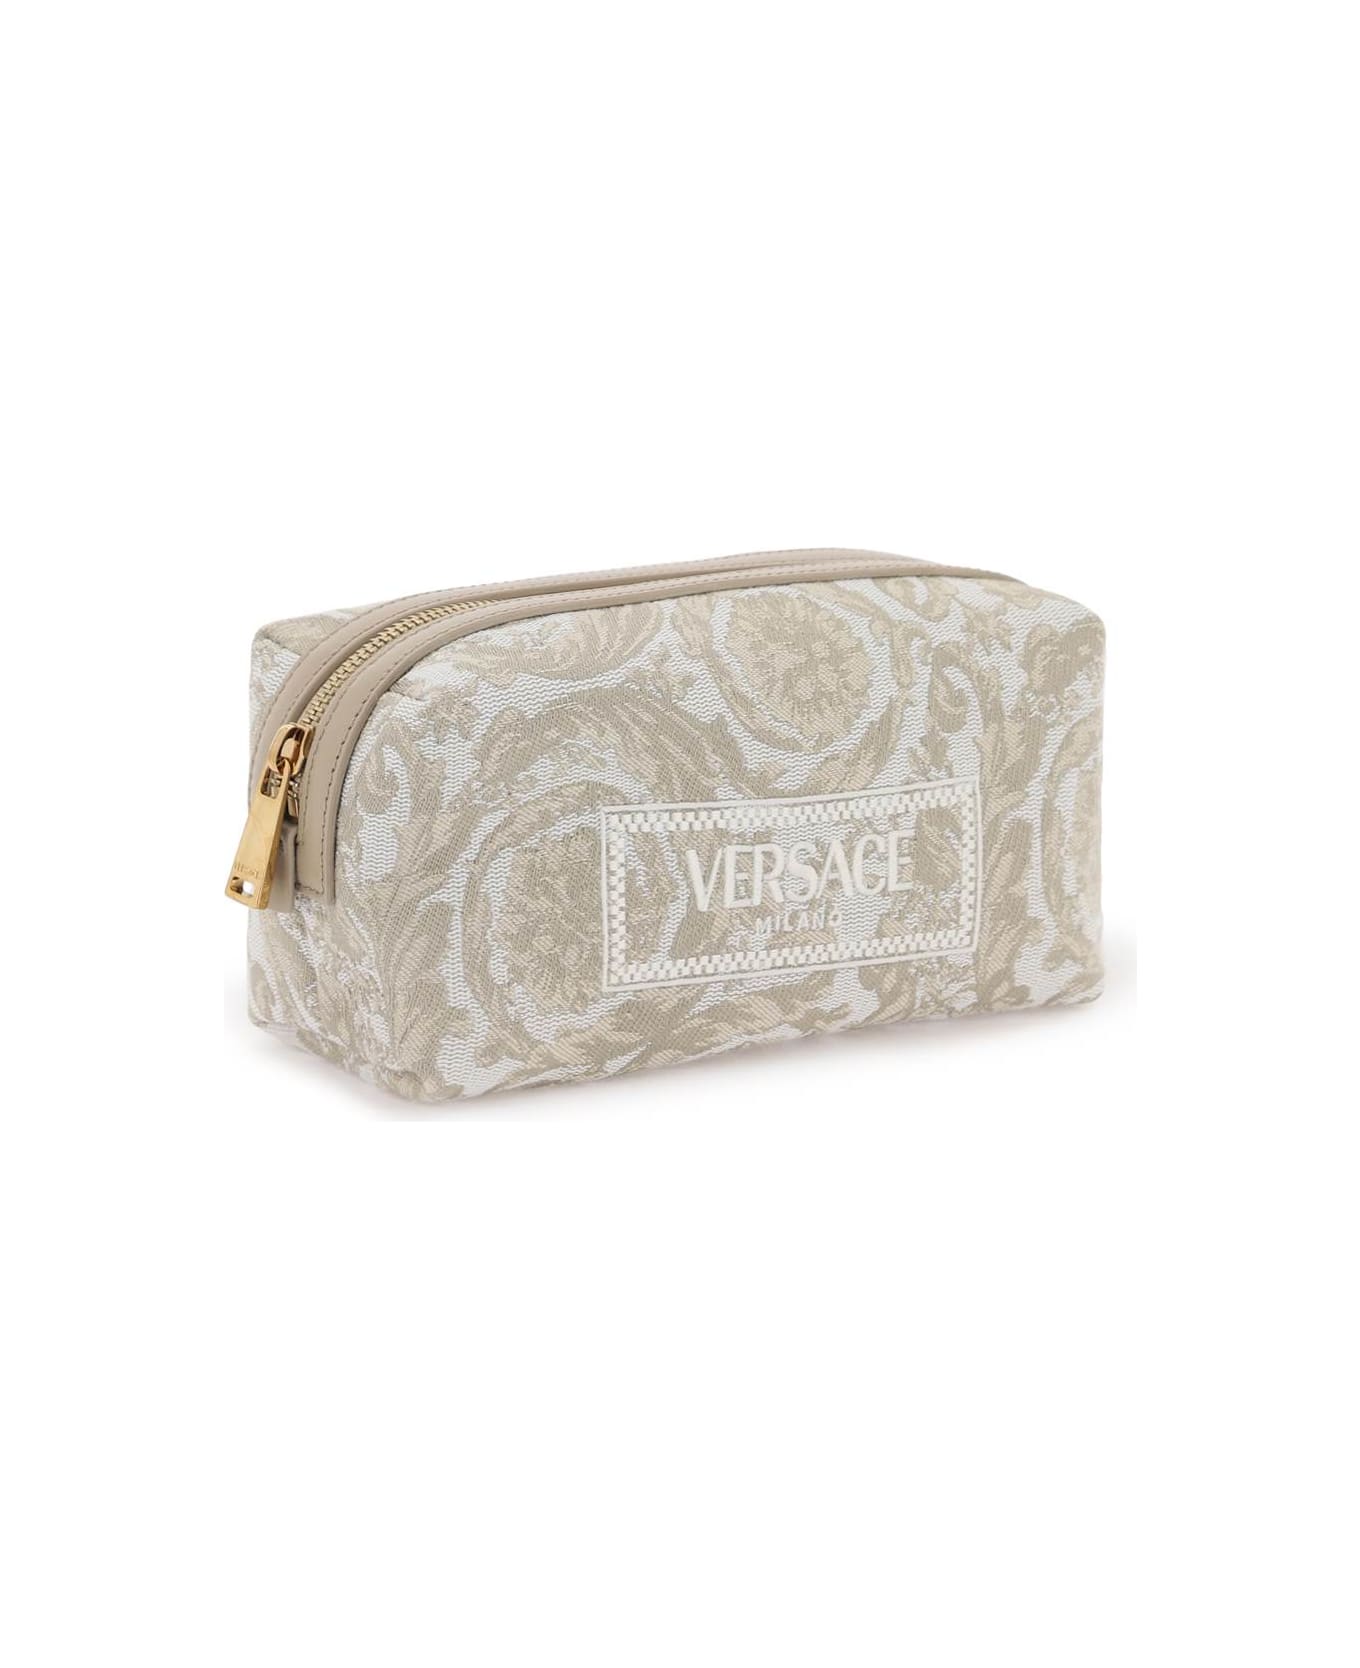 Versace Barocco Vanity Case - BEIGE BEIGE VERSACE GOLD (White)